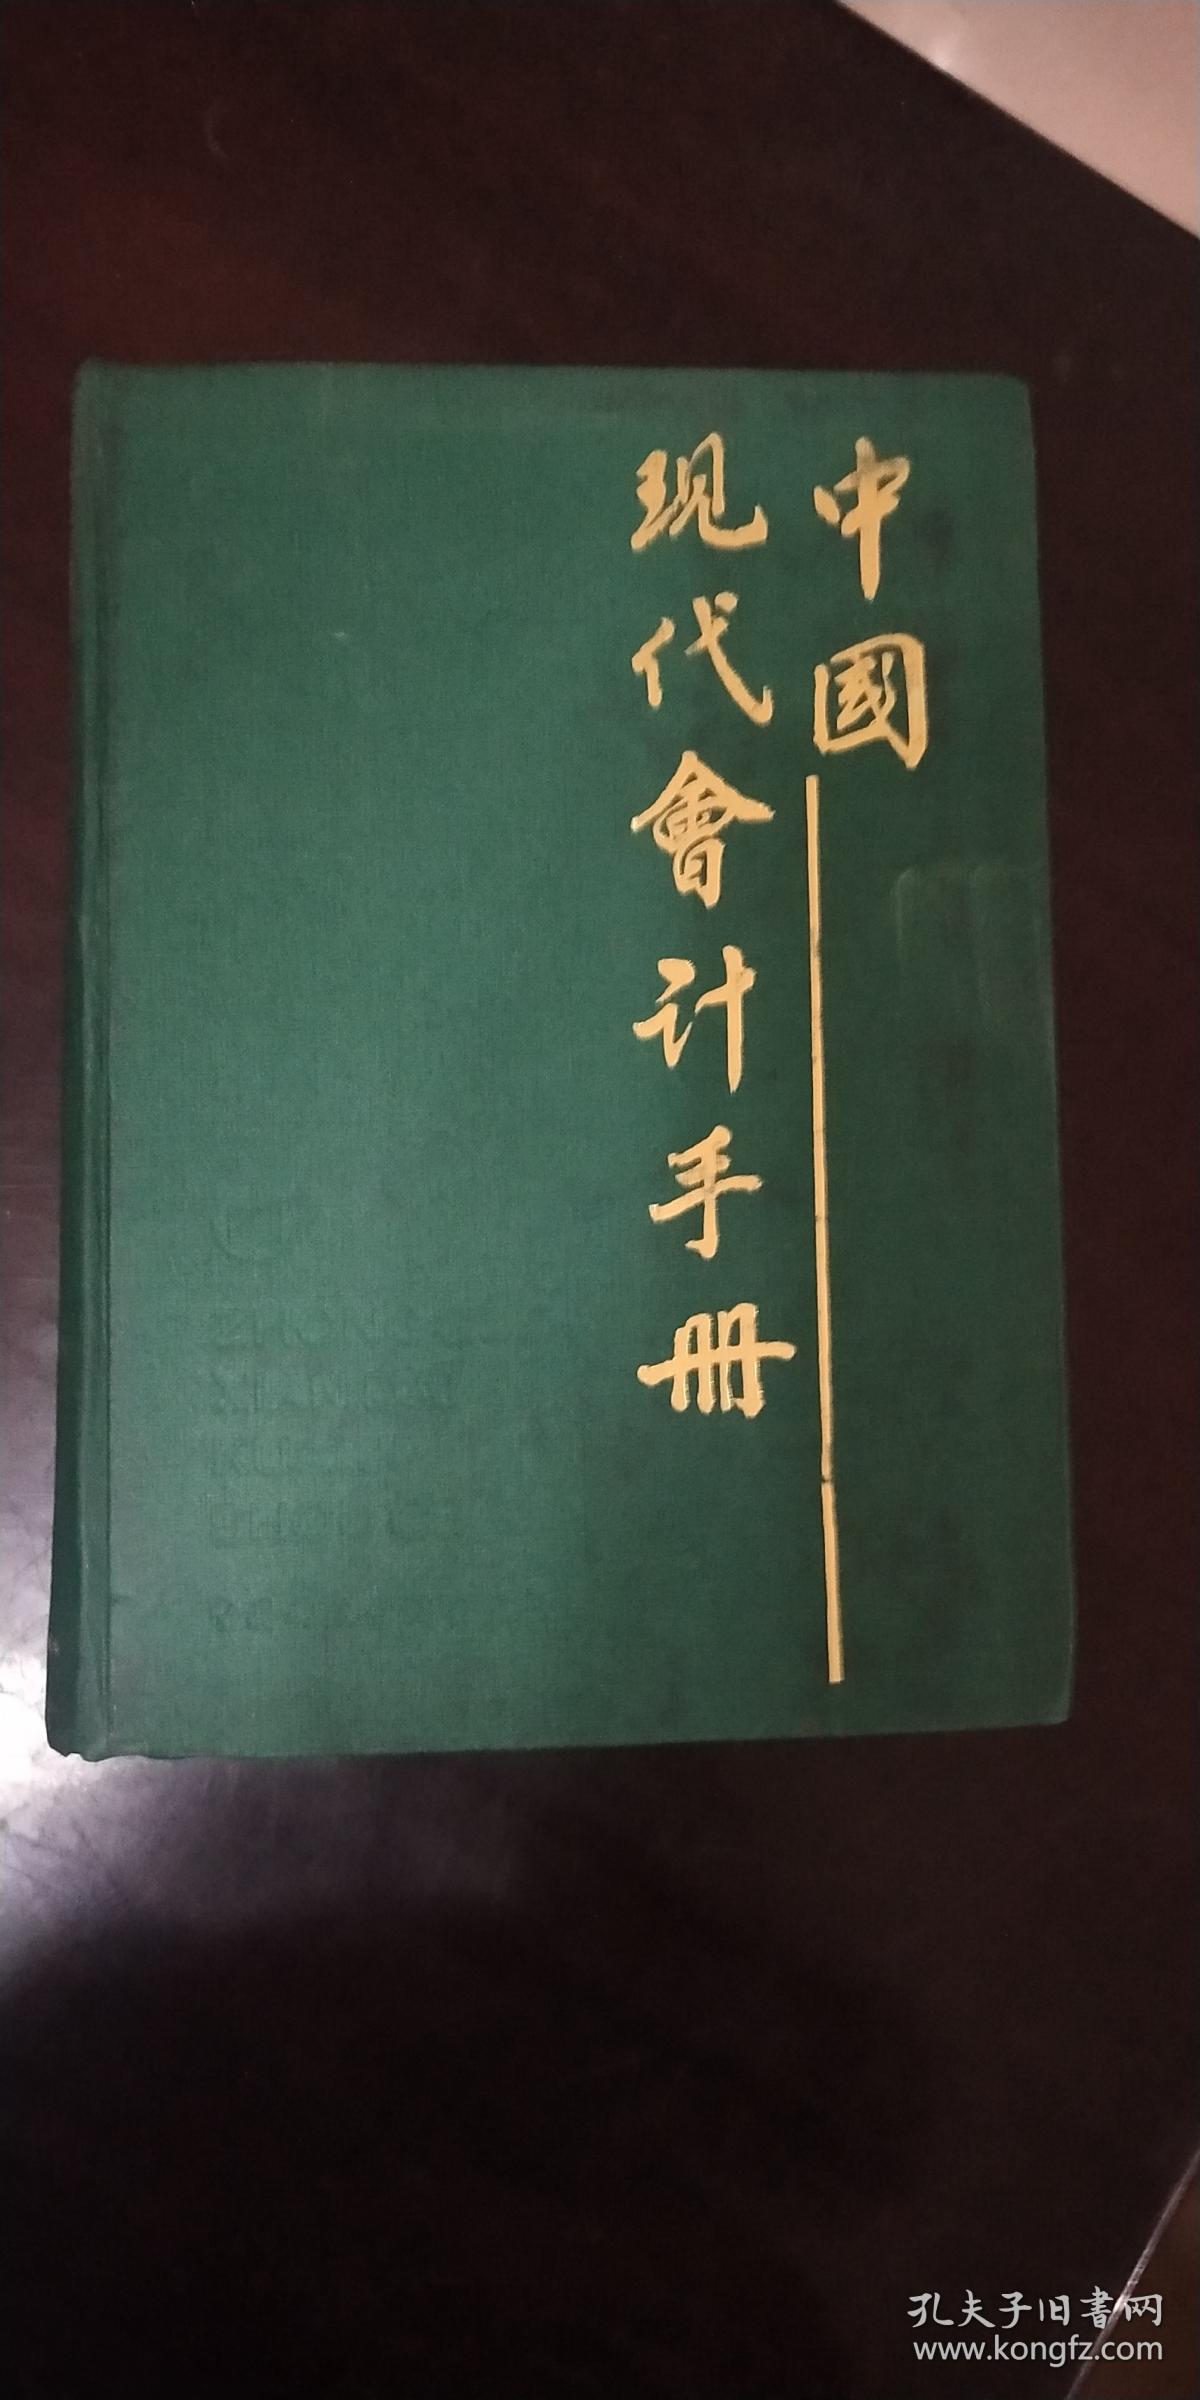 中国现代会计手册